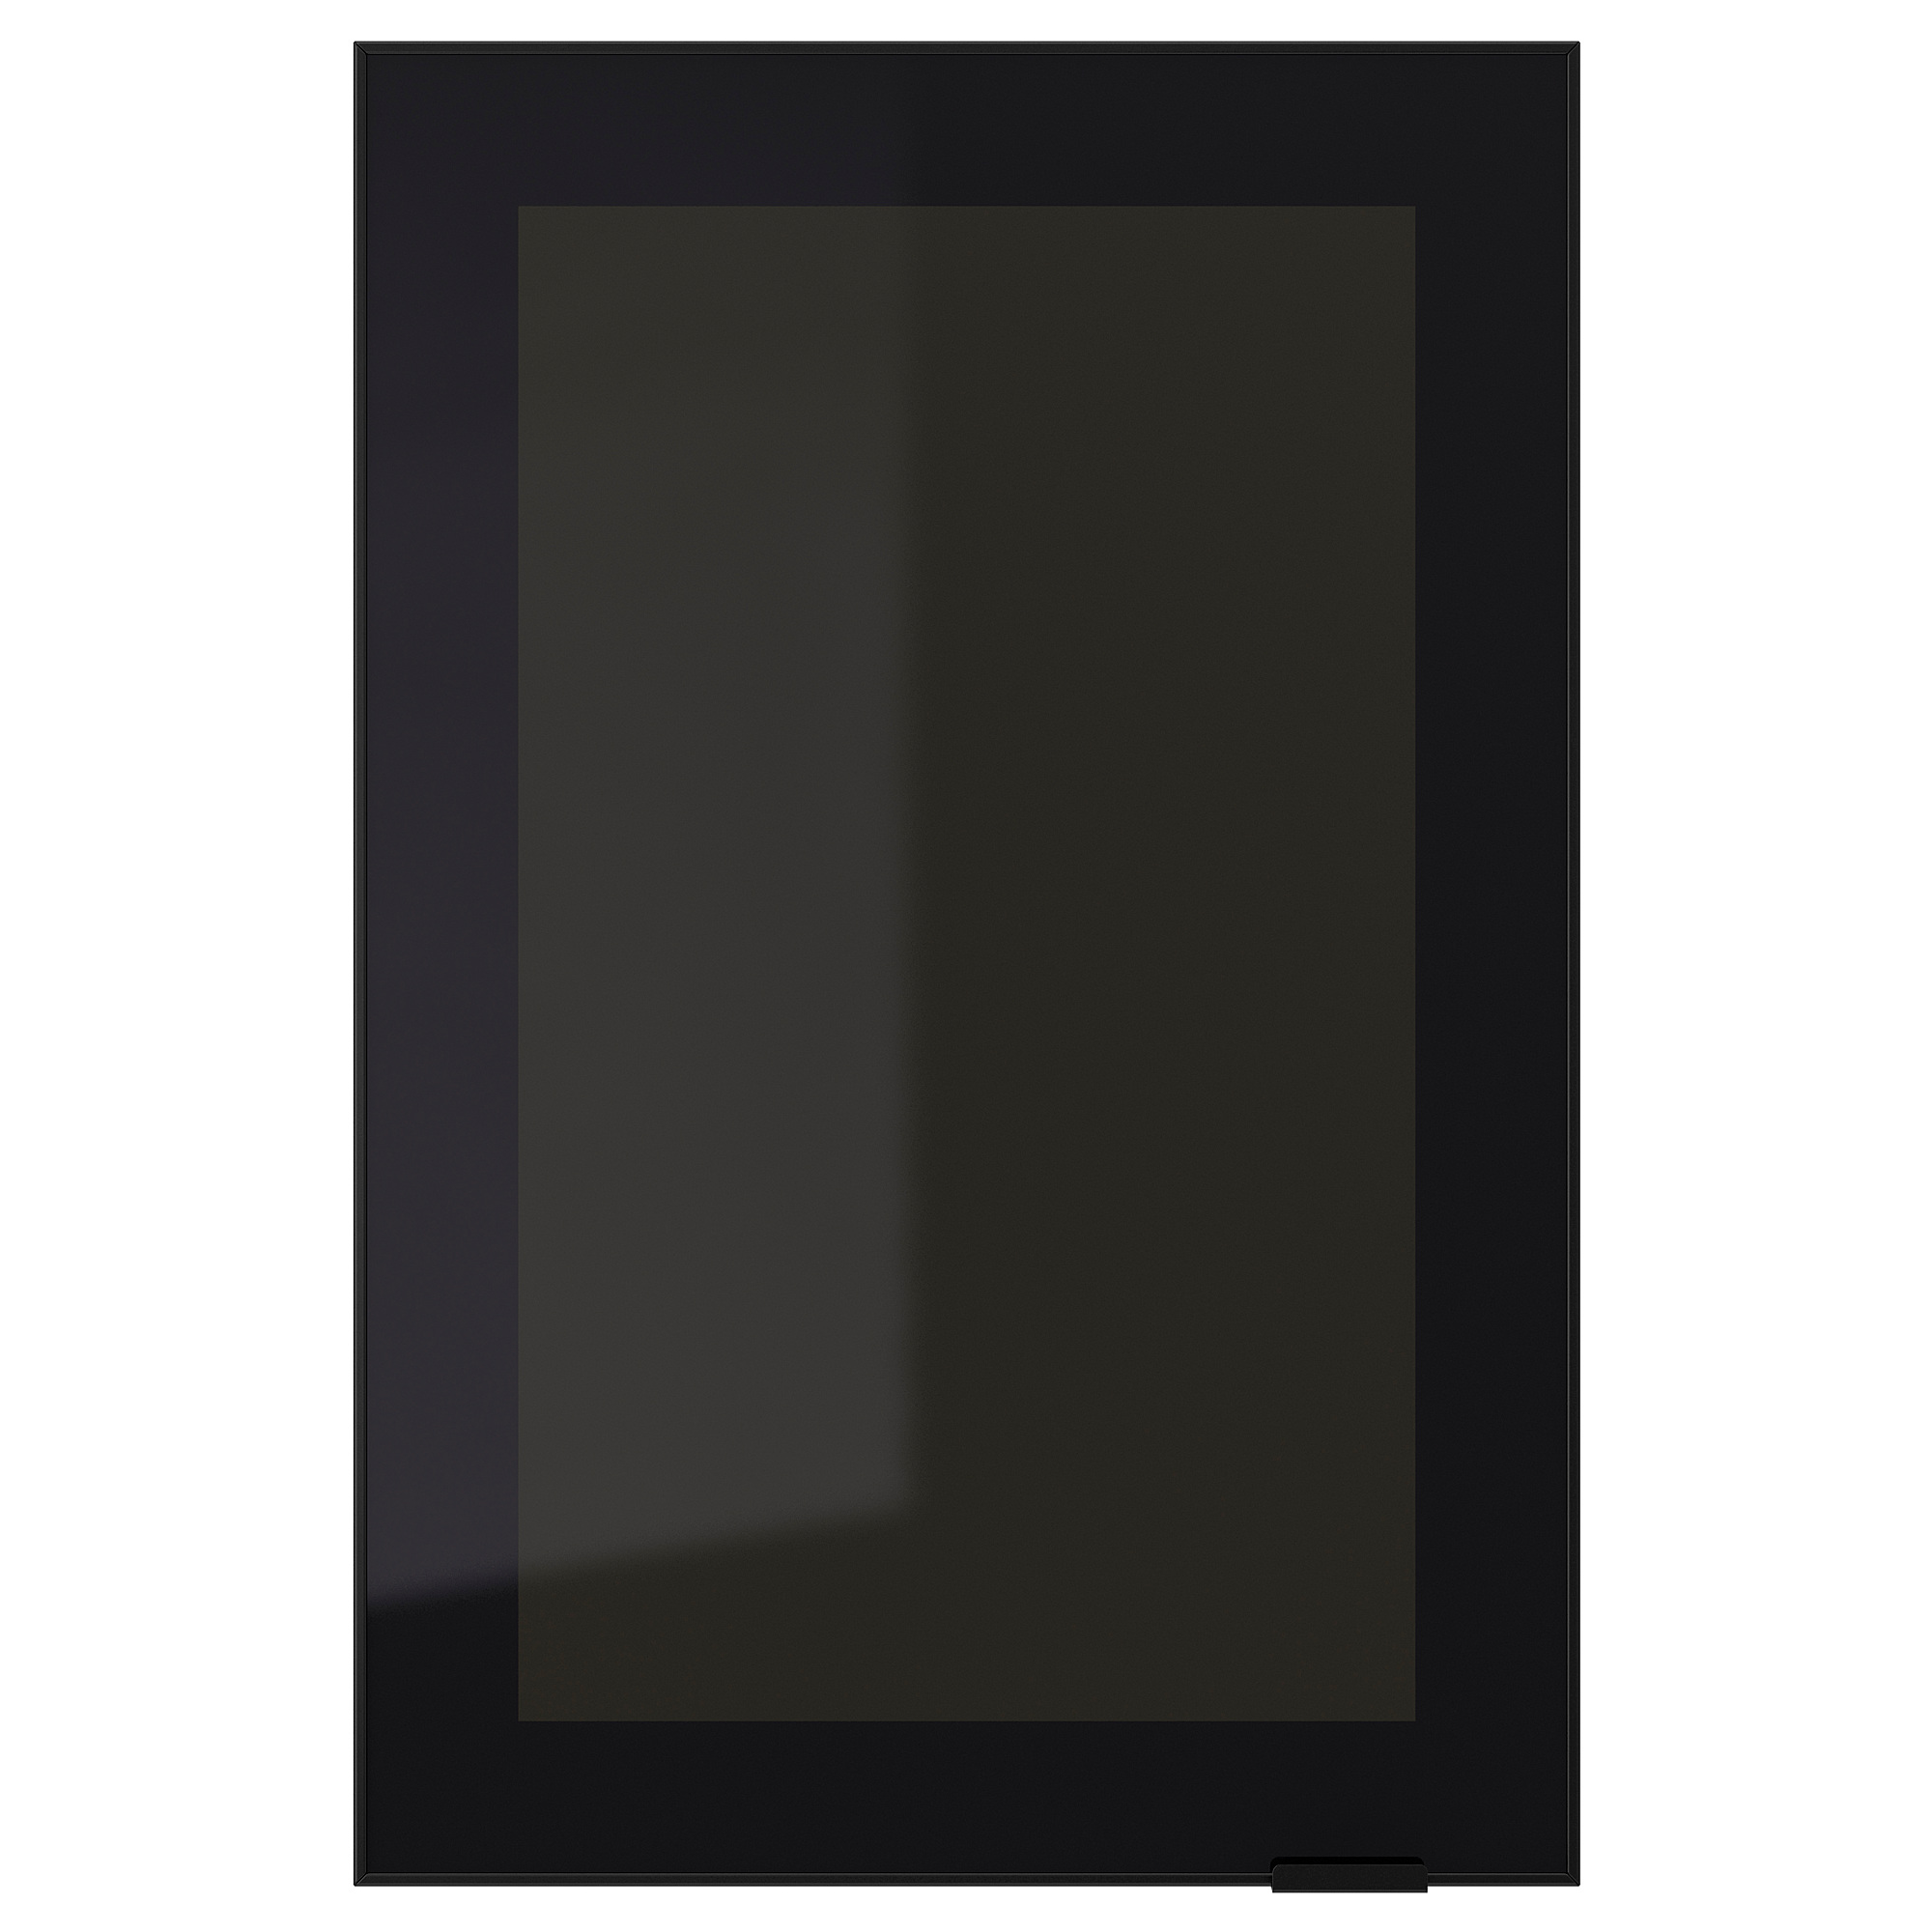 Черная алюминиевая рамка. Дверь икеа ЮТИС 60 60. Jutis ЮТИС стеклянная дверь, матовое стекло/алюминий40x80 см. Стеклянная дверь 40x60. Дверца ikea 40x40 со стеклом.